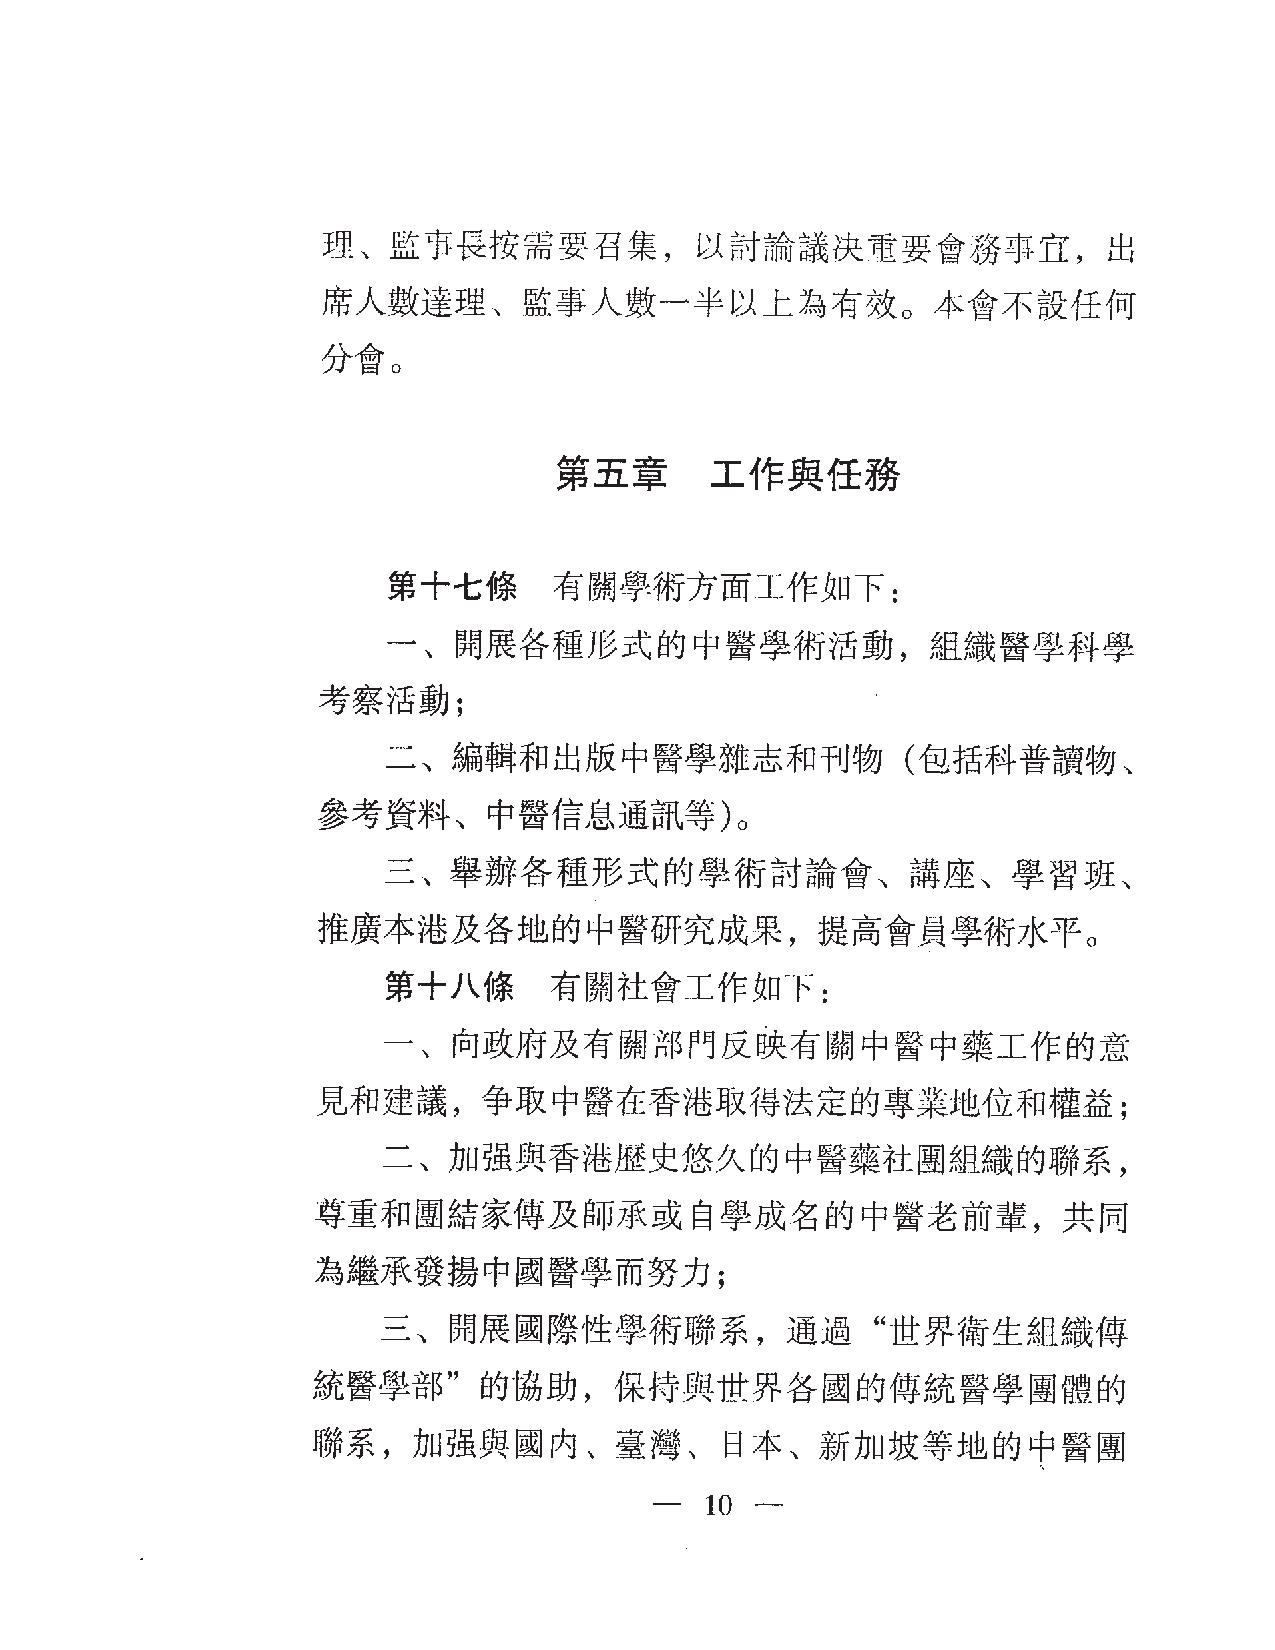 香港中醫學會組織章程11